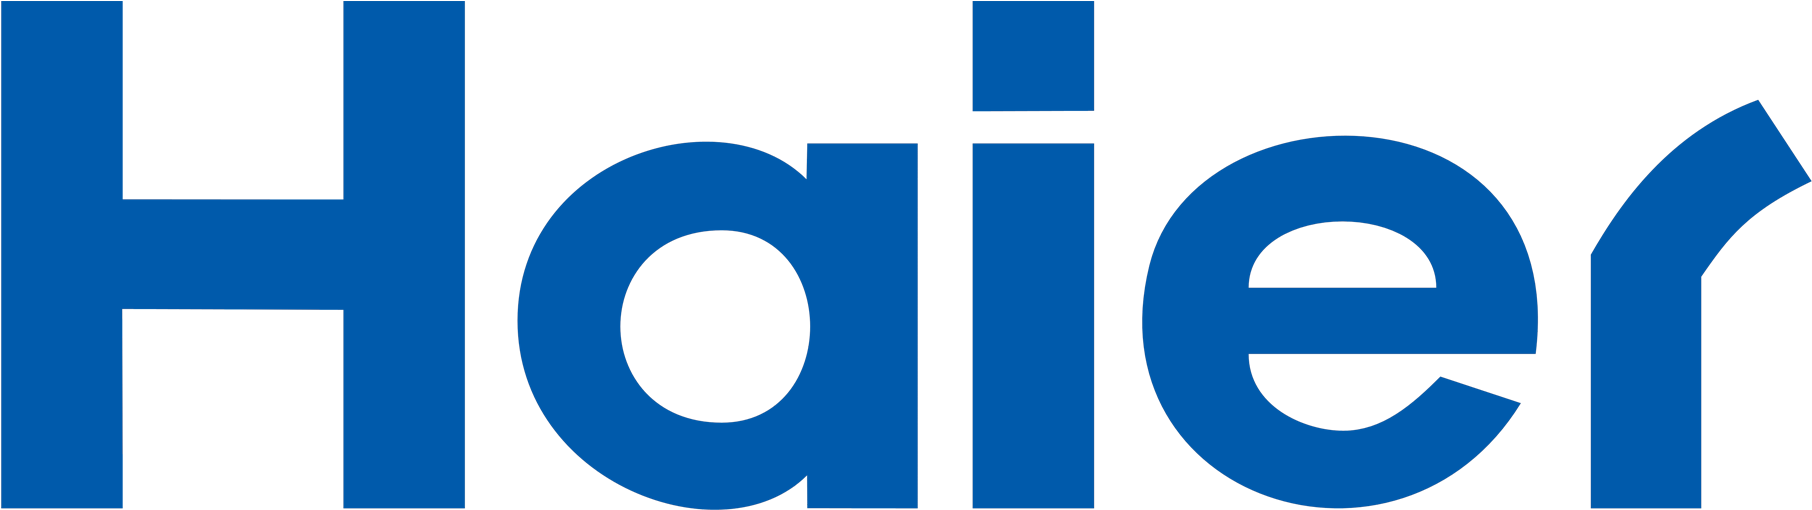 Haier airco logo